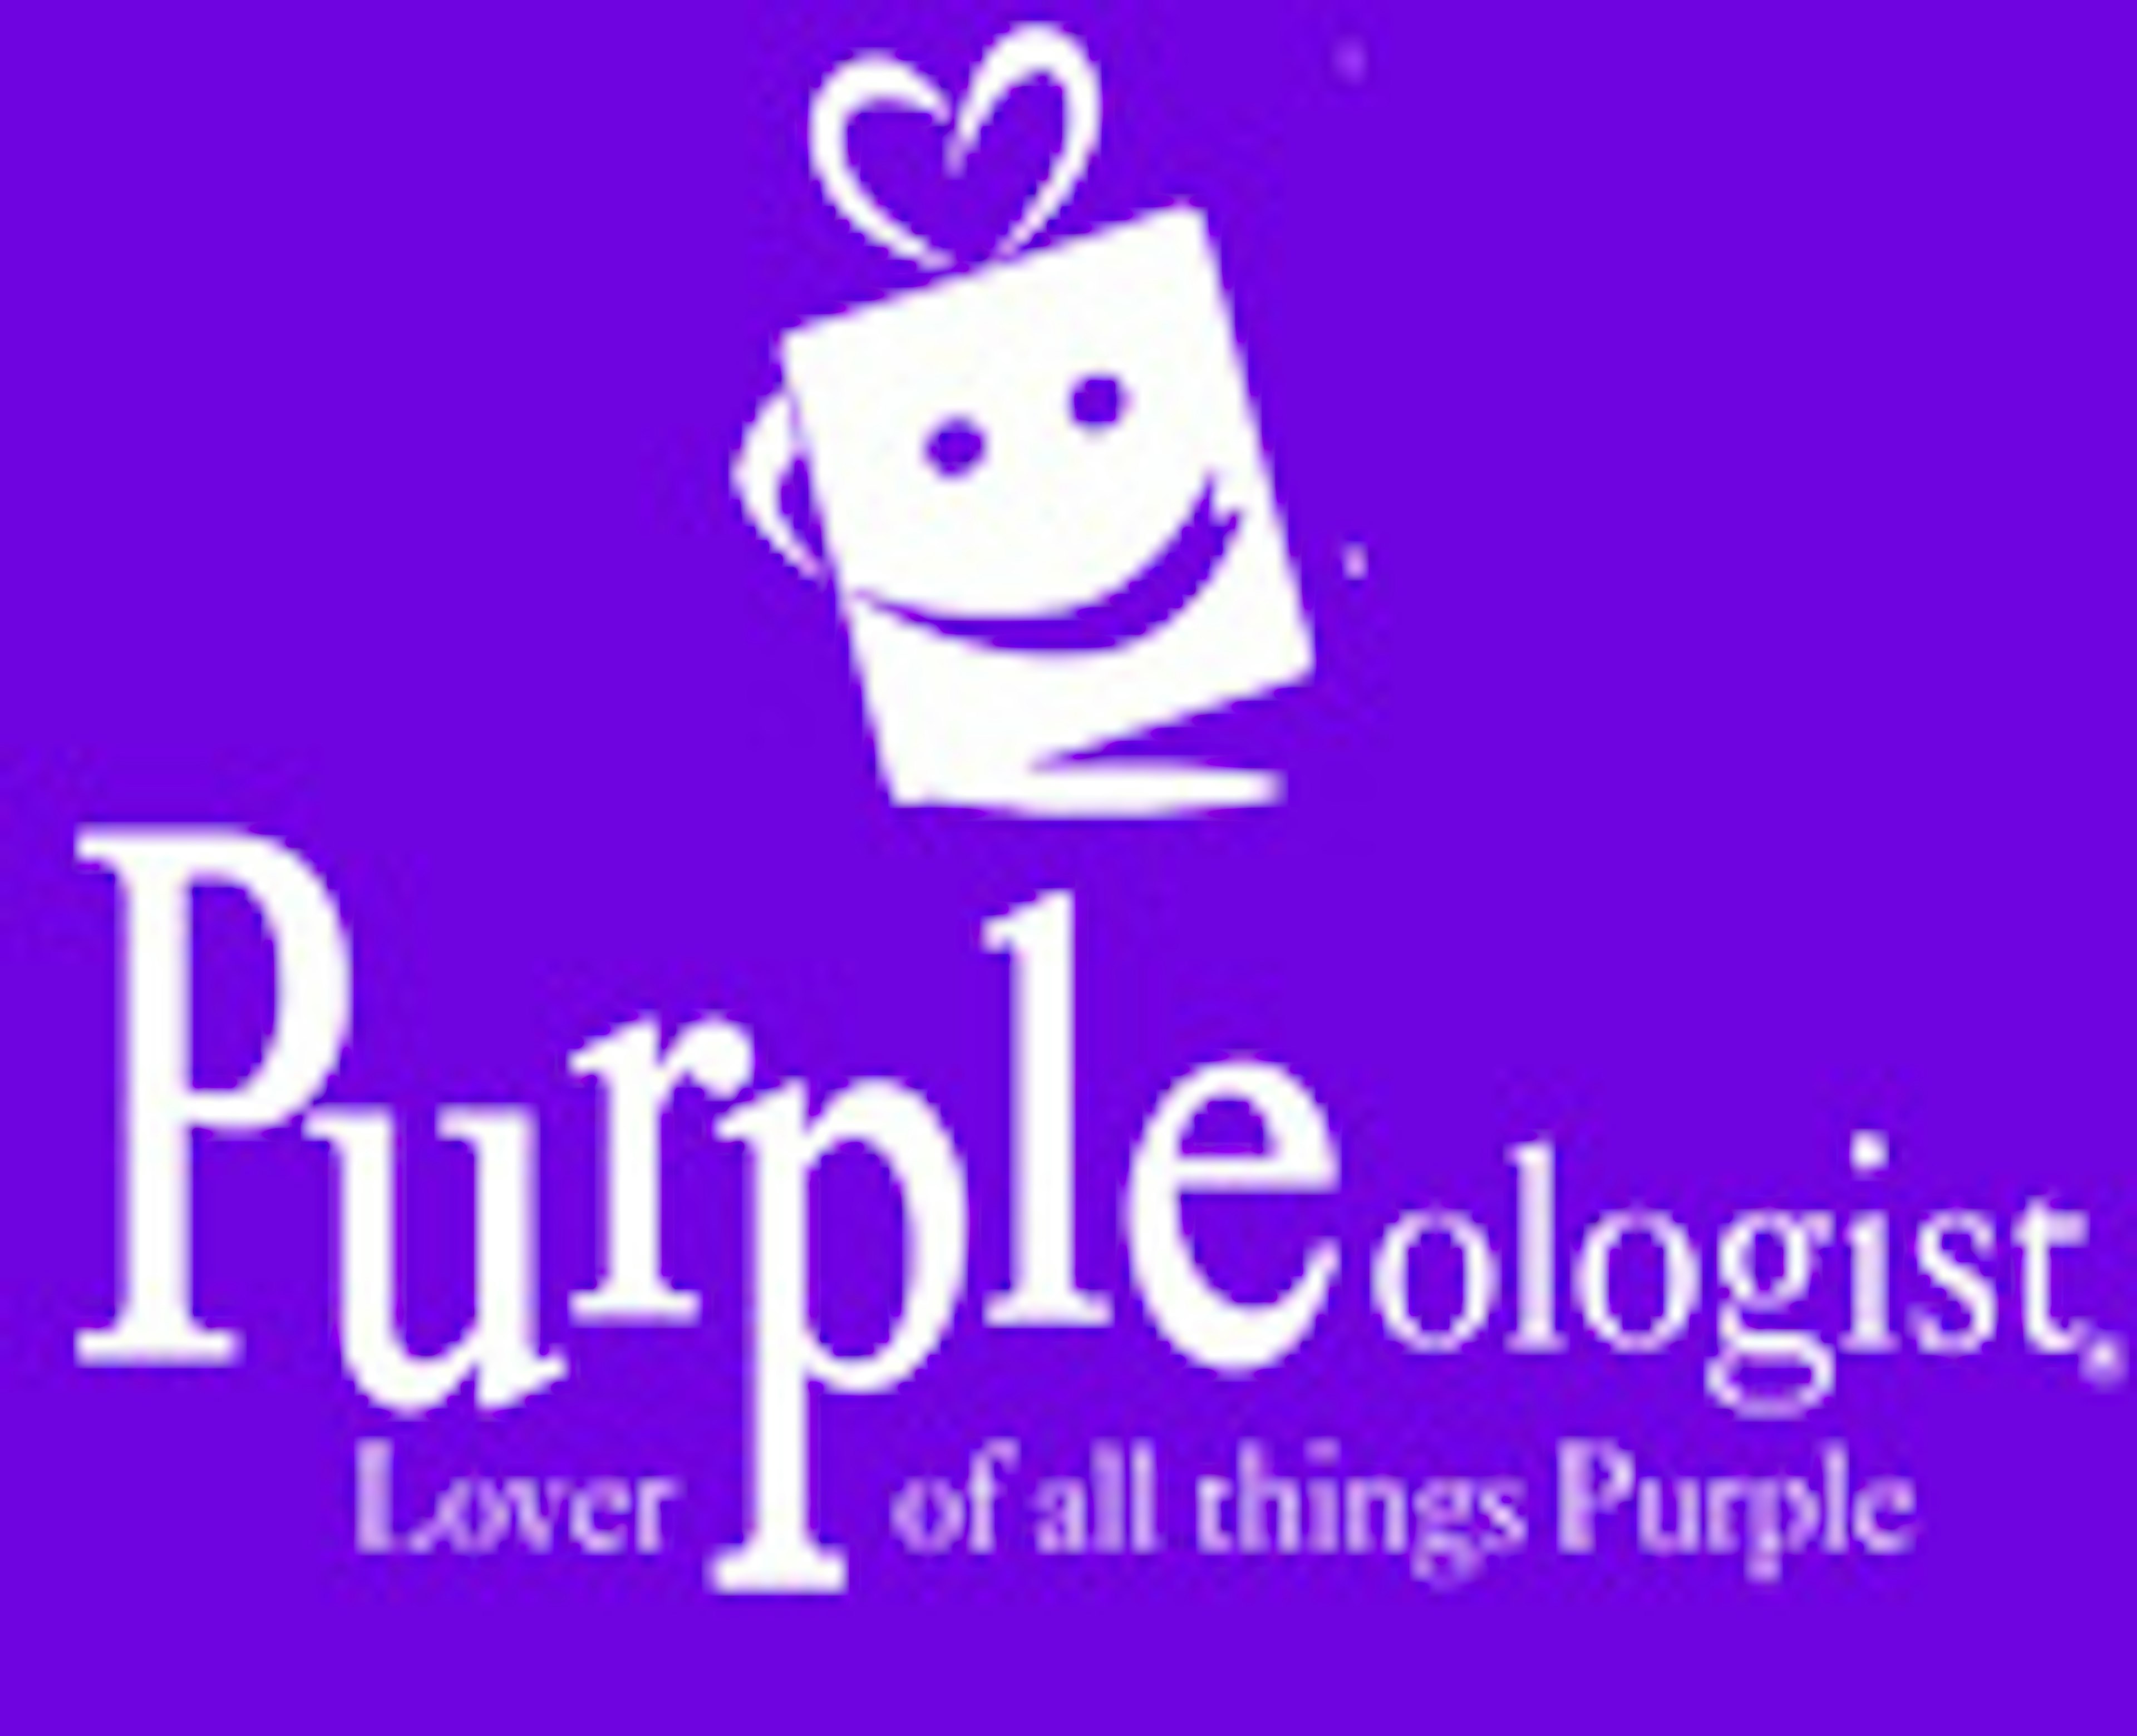 Purpleologist